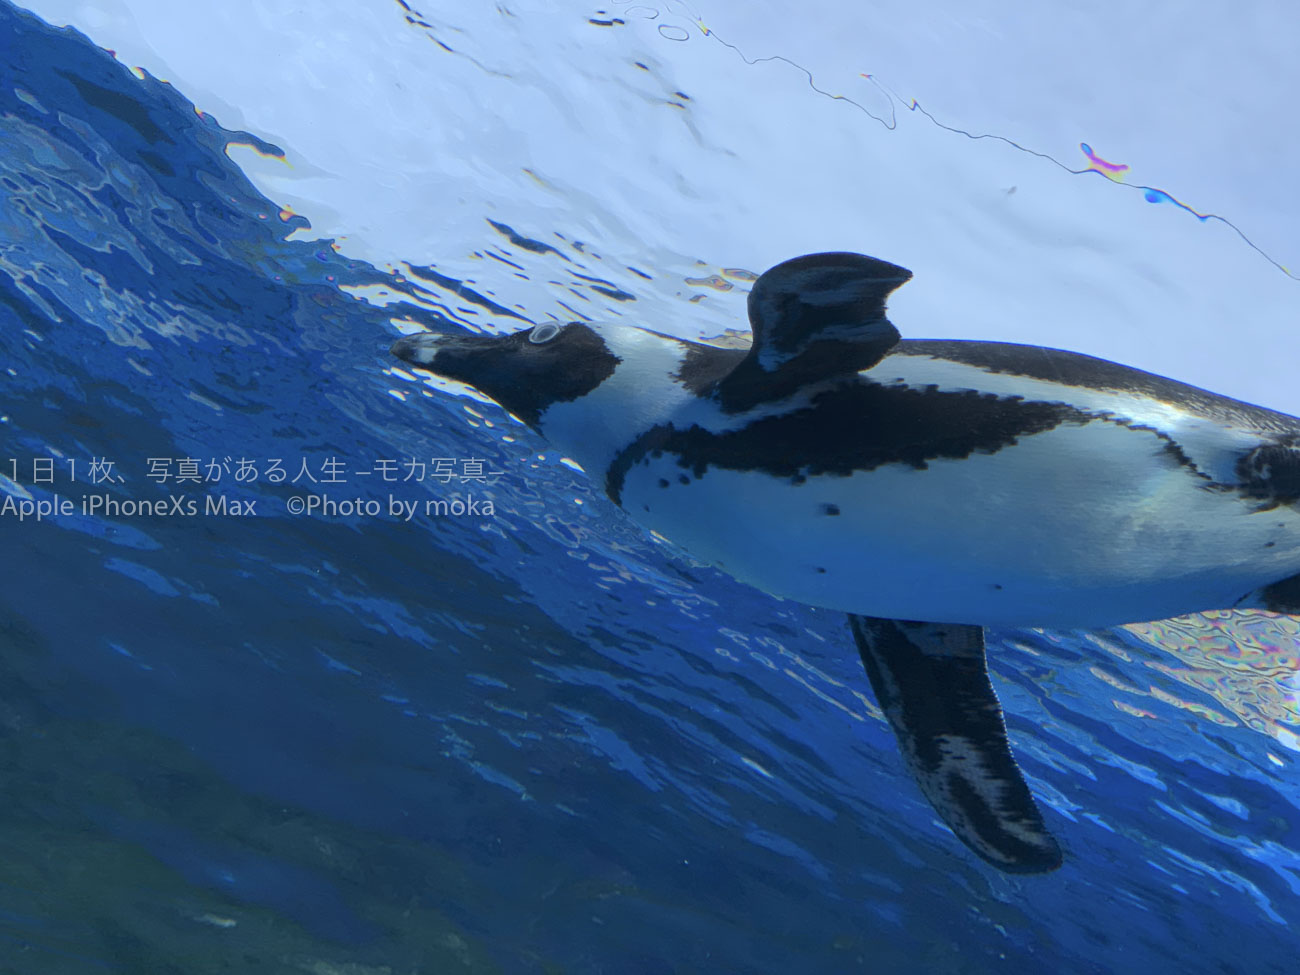 【水族館撮影】ペンギンに・・・会いたい。